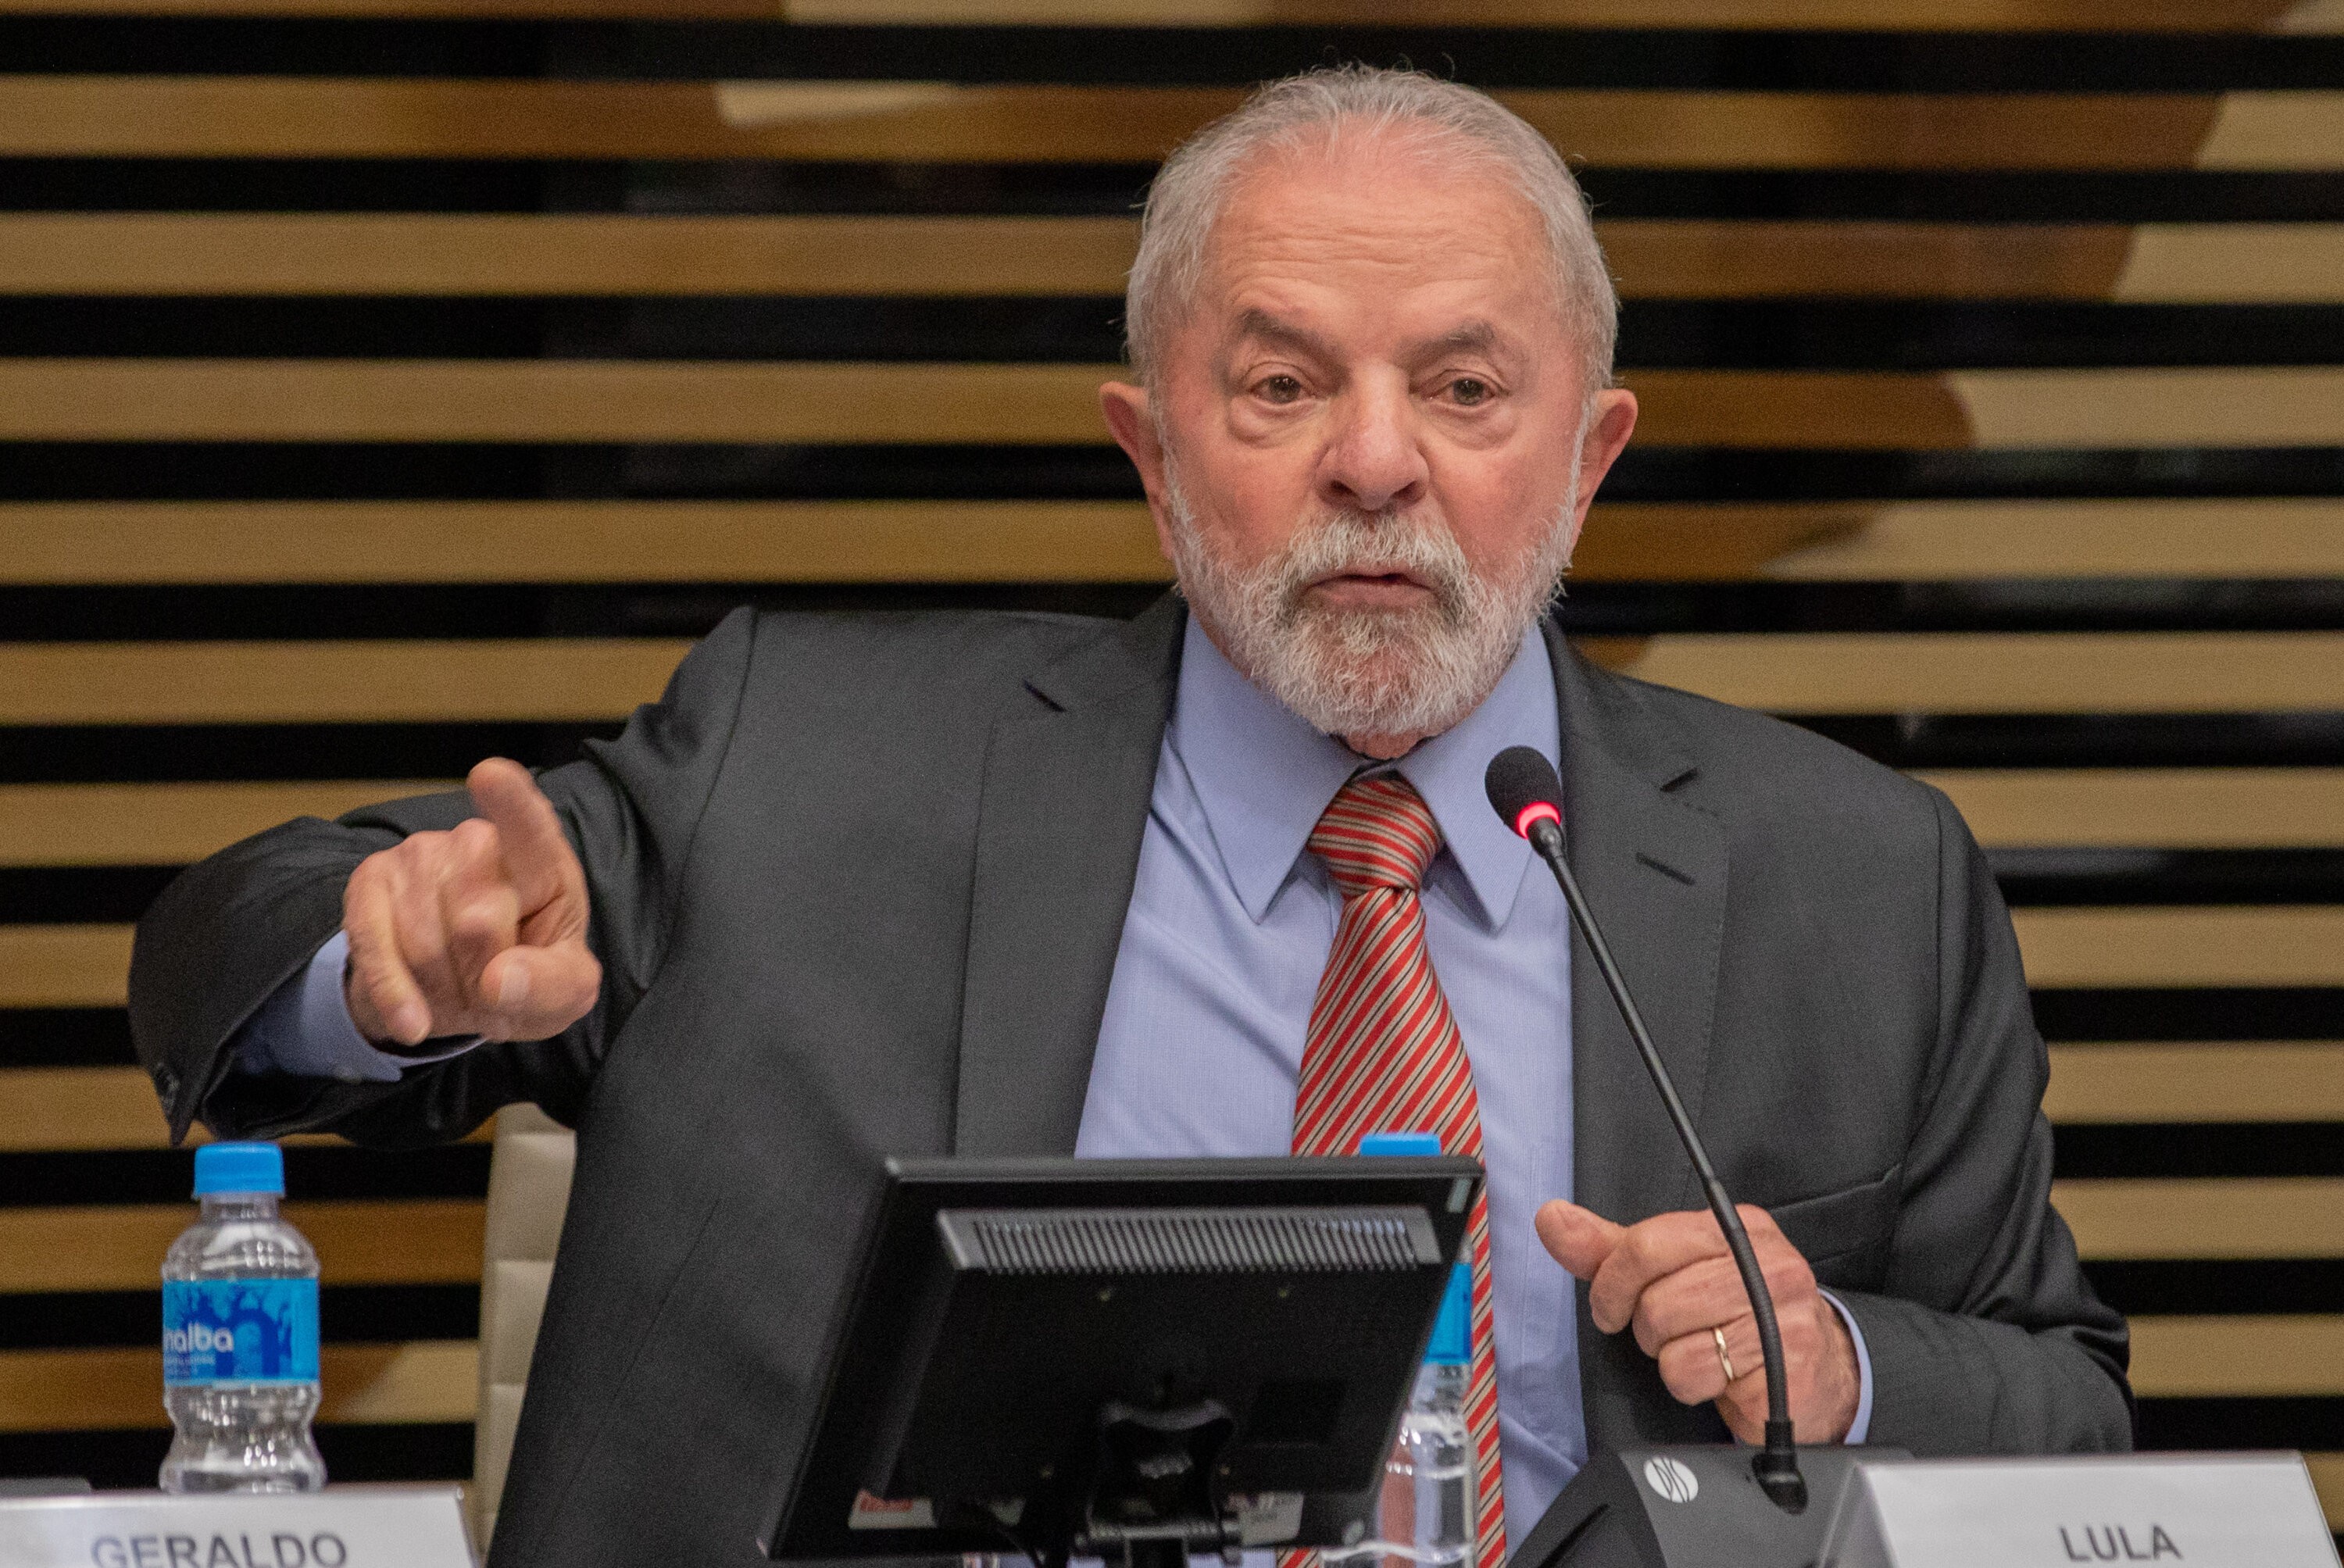 Lula promete reforma administrativa em eventual governo: 'tem pouca gente ganhando muito e tem muita gente ganhando muito pouco'